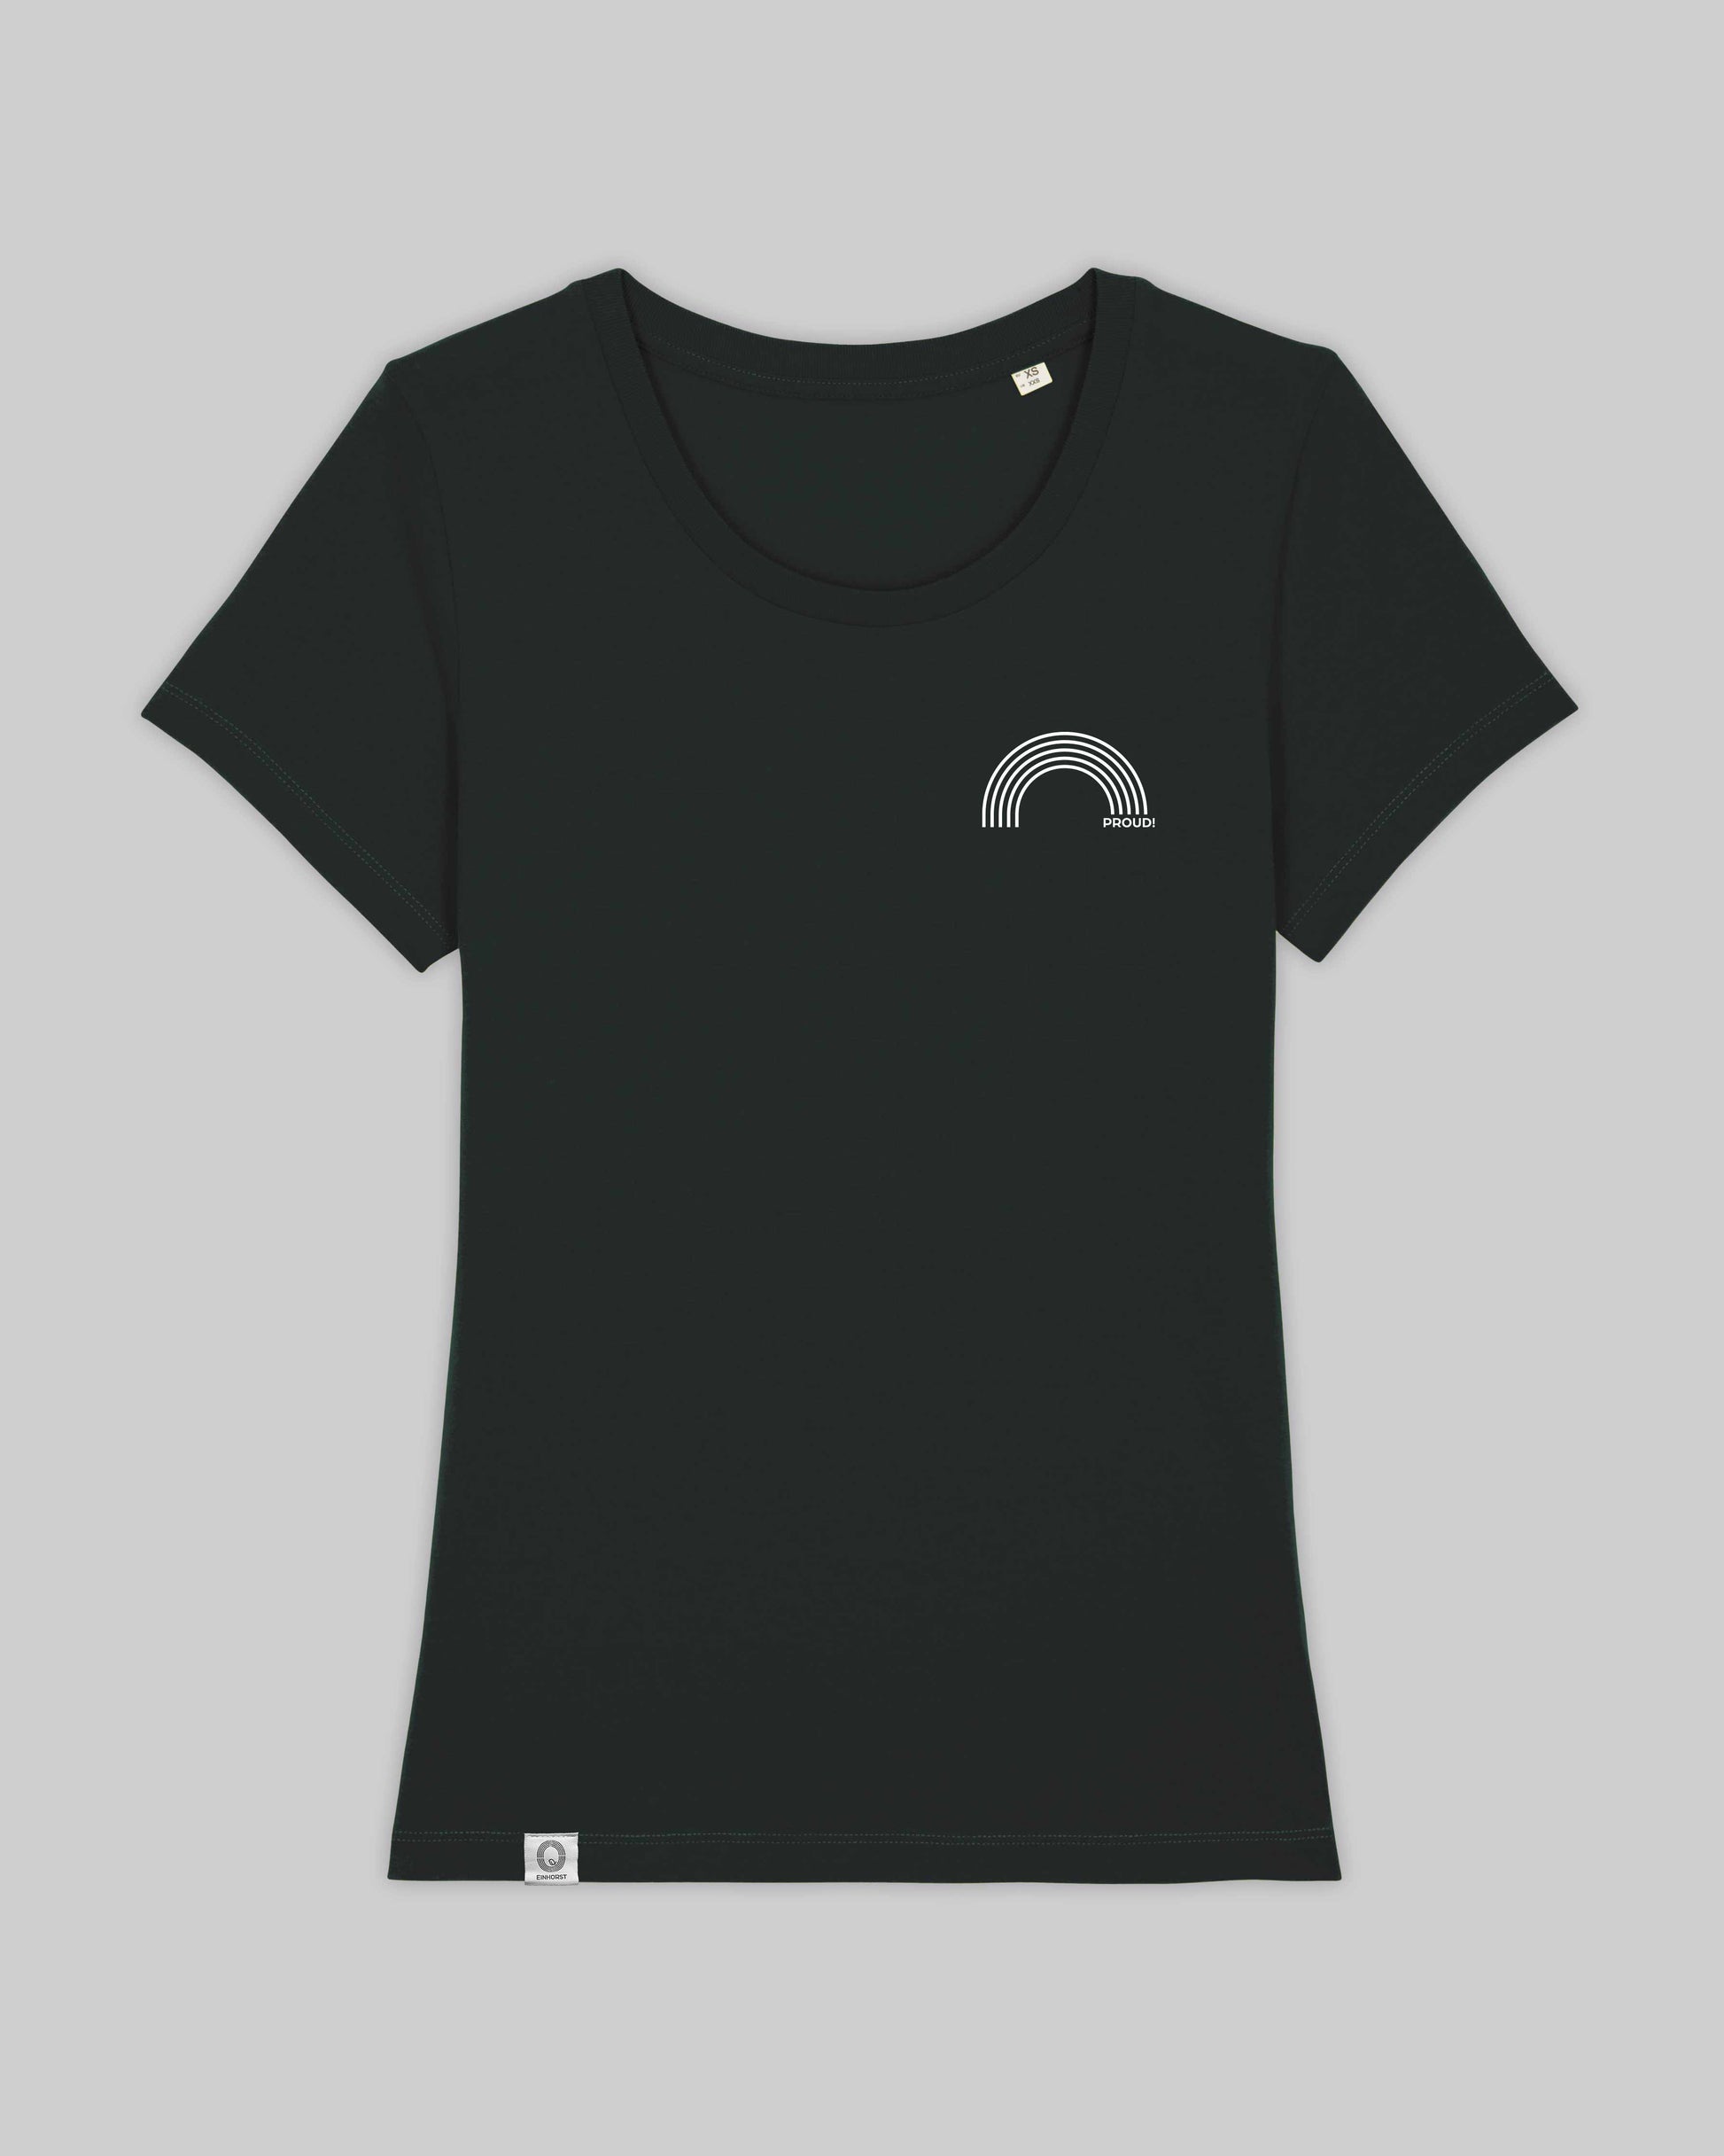 EINHORST® Organic Shirt tailliert in "Schwarz" mit dem Motiv "proud Regenbogen" in der Kombination weißer Regenbogen mit weißer Schrift, Bild von Shirt von vorne